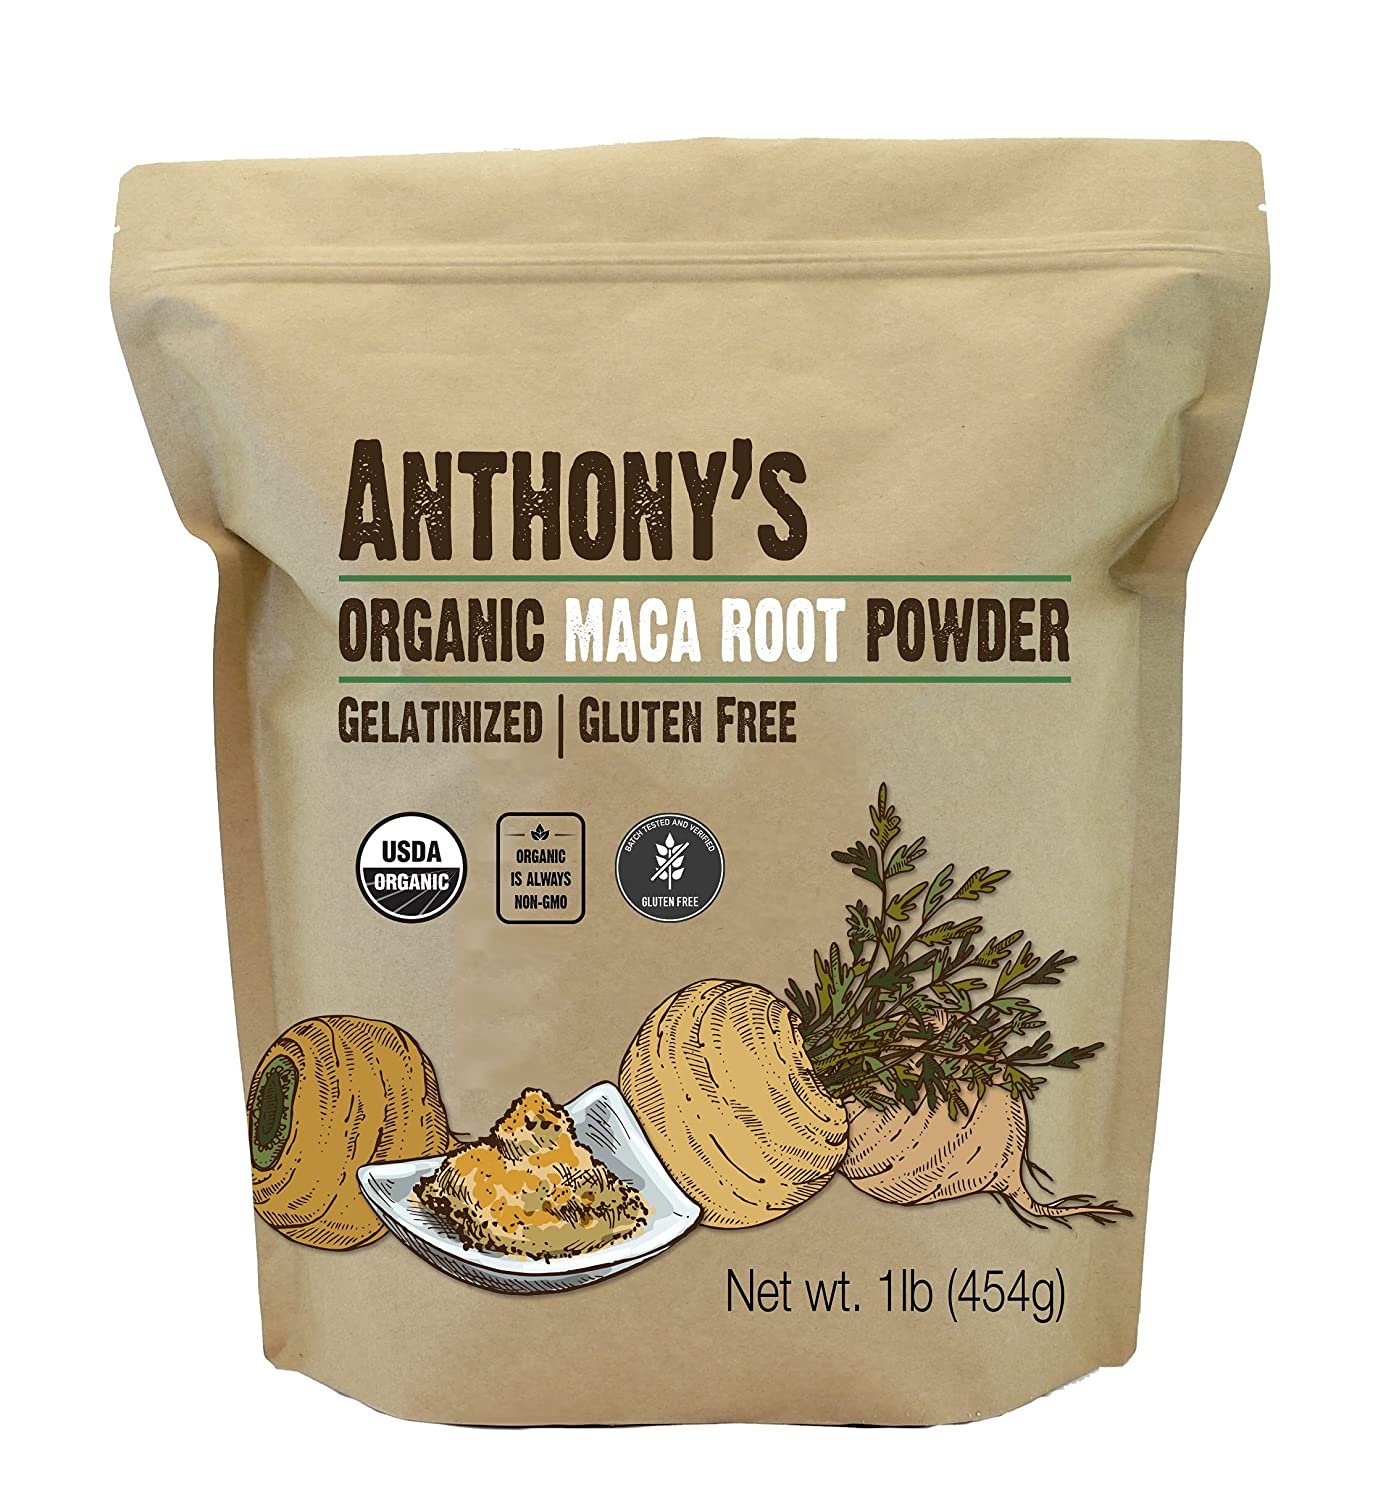 Anthony's Organic Maca Root Powder